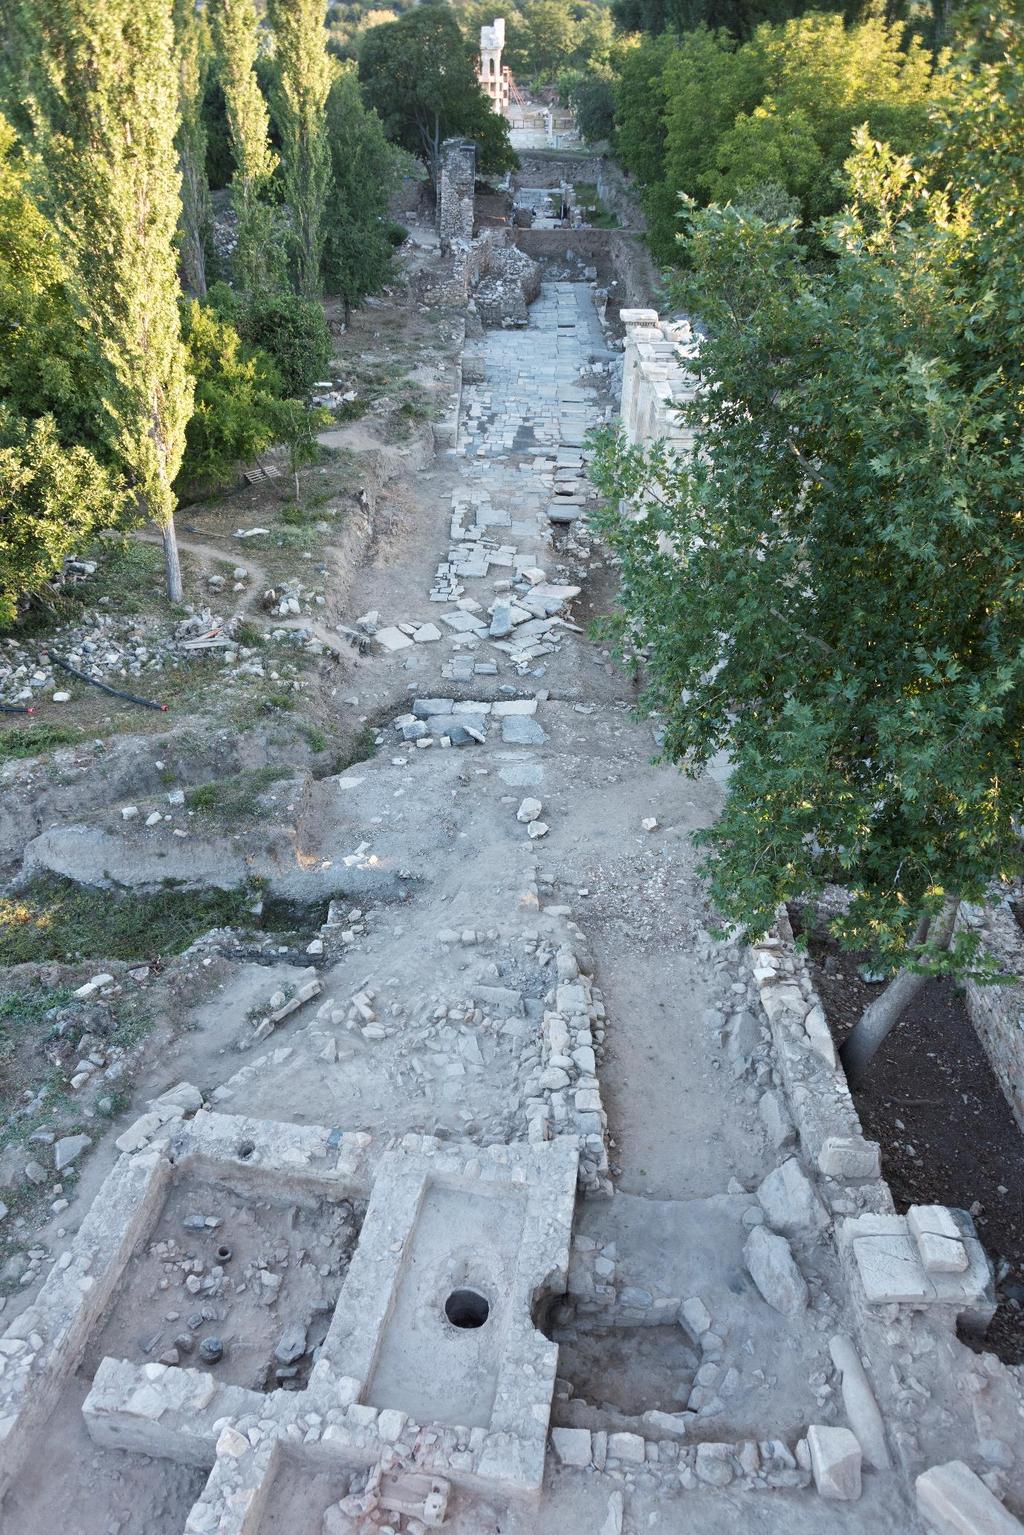 Resim 49: Tetrapylon Sokağı, ön planda Selçuklu hamam